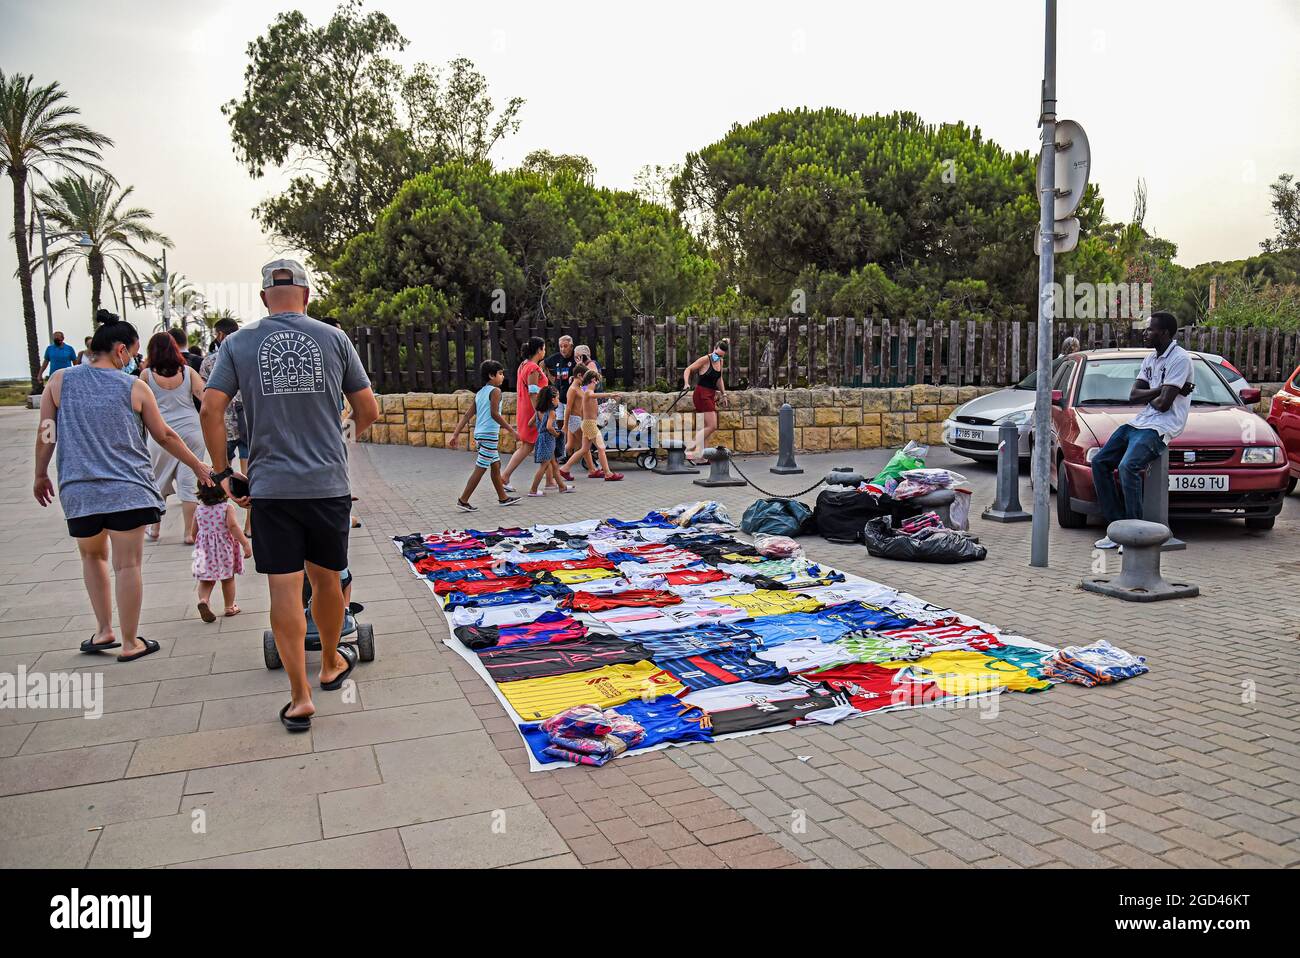 Vendrell, España. 05th de agosto de 2021. La gente camina delante de los  puestos con mantas en el suelo cubiertas de productos ilegales a lo largo  de Paseo Maritimo Street en Vendrell.